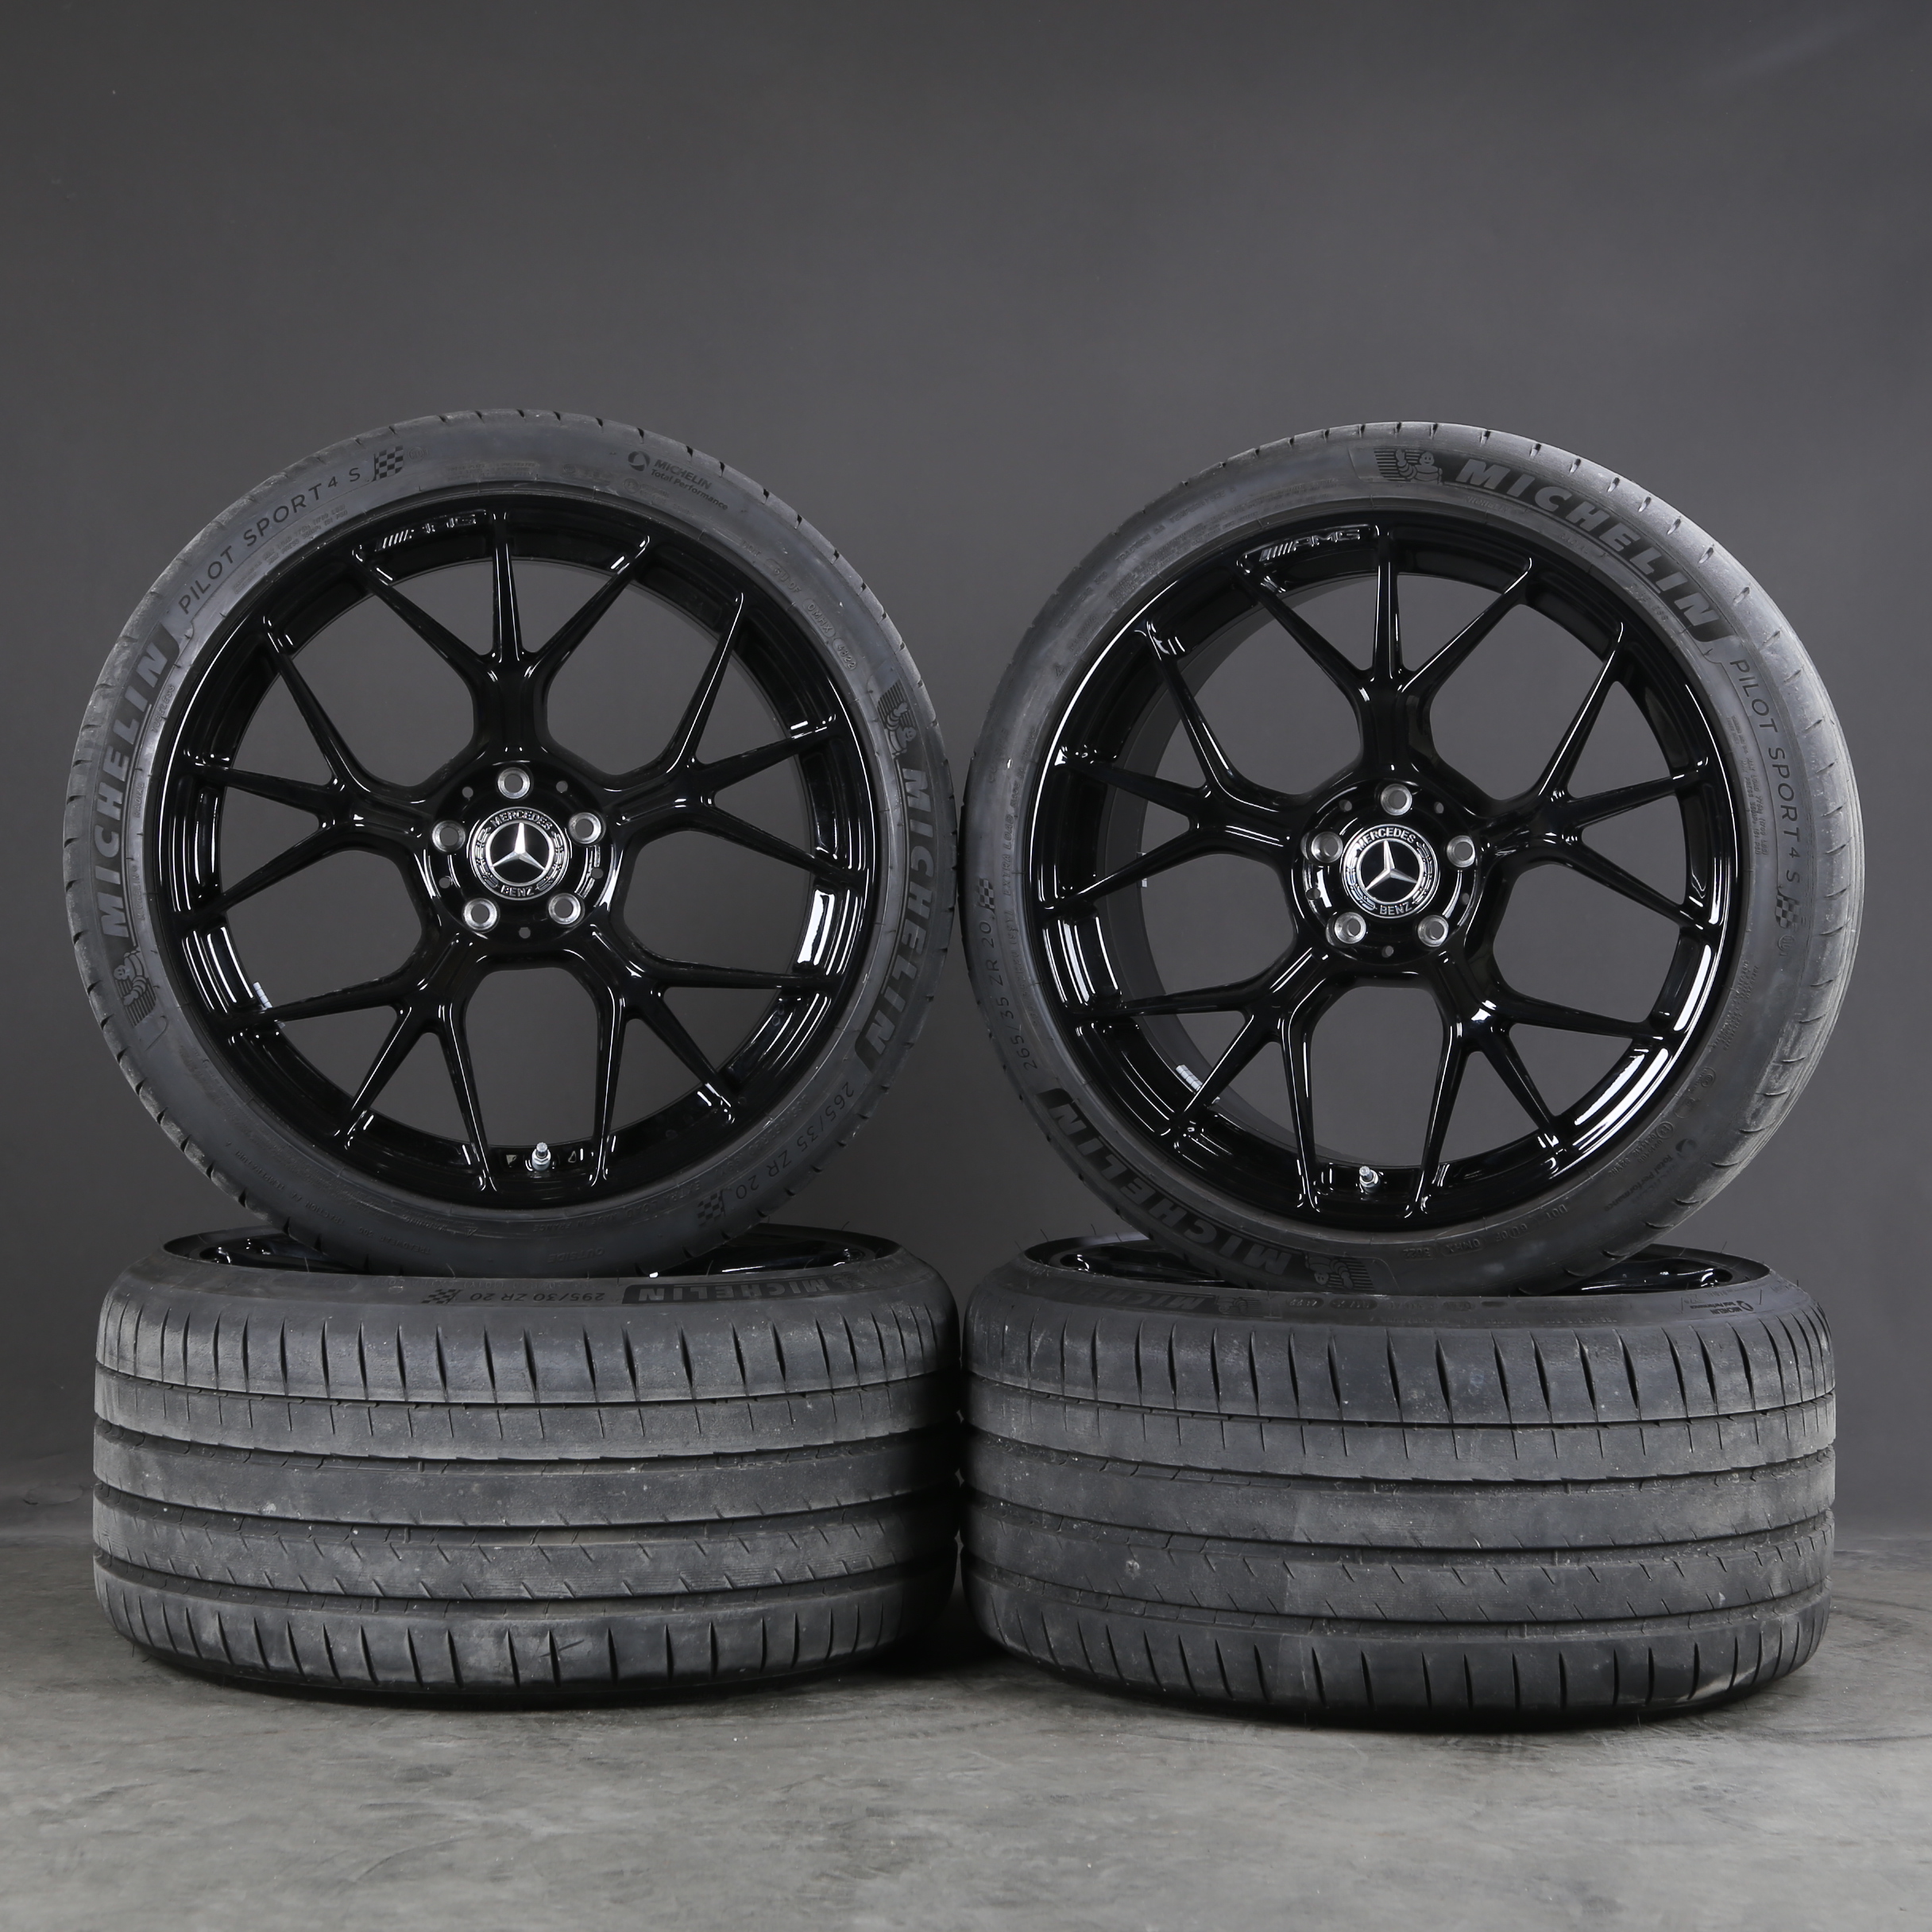 Llantas de verano de 20 pulgadas originales Mercedes CLE53 C236 AMG A2364013100 neumáticos de verano